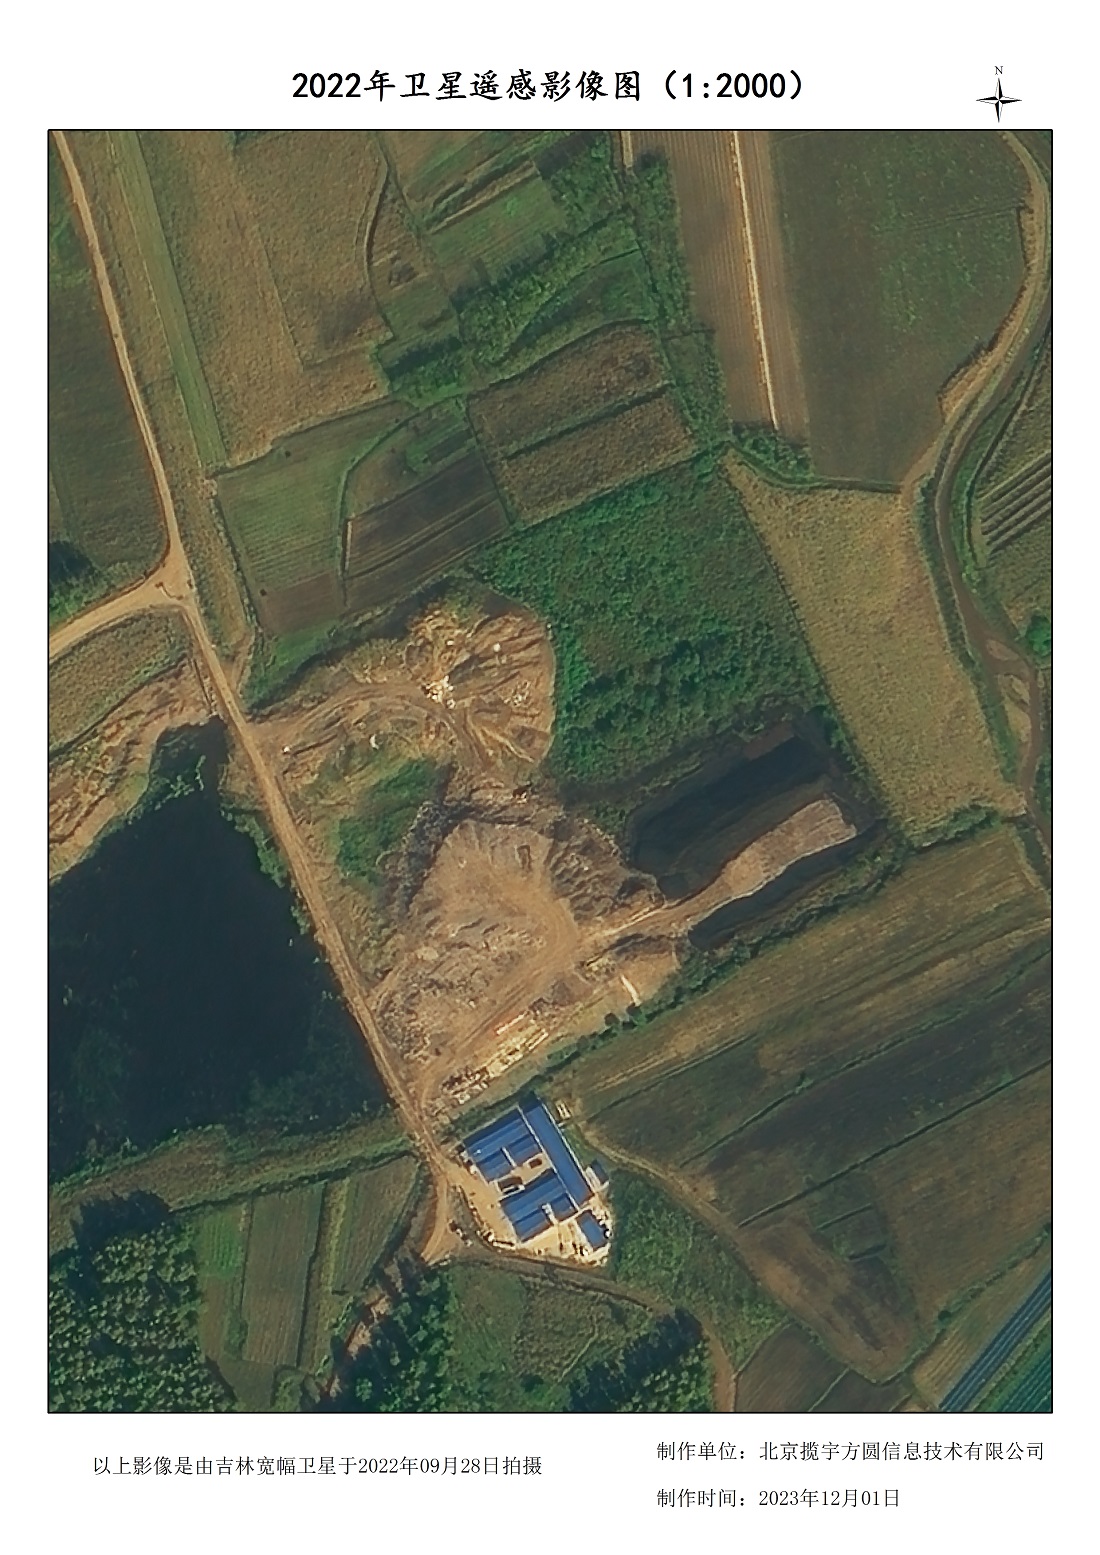 同一地区不同时间的平原拍摄卫星影像A4样式示例图